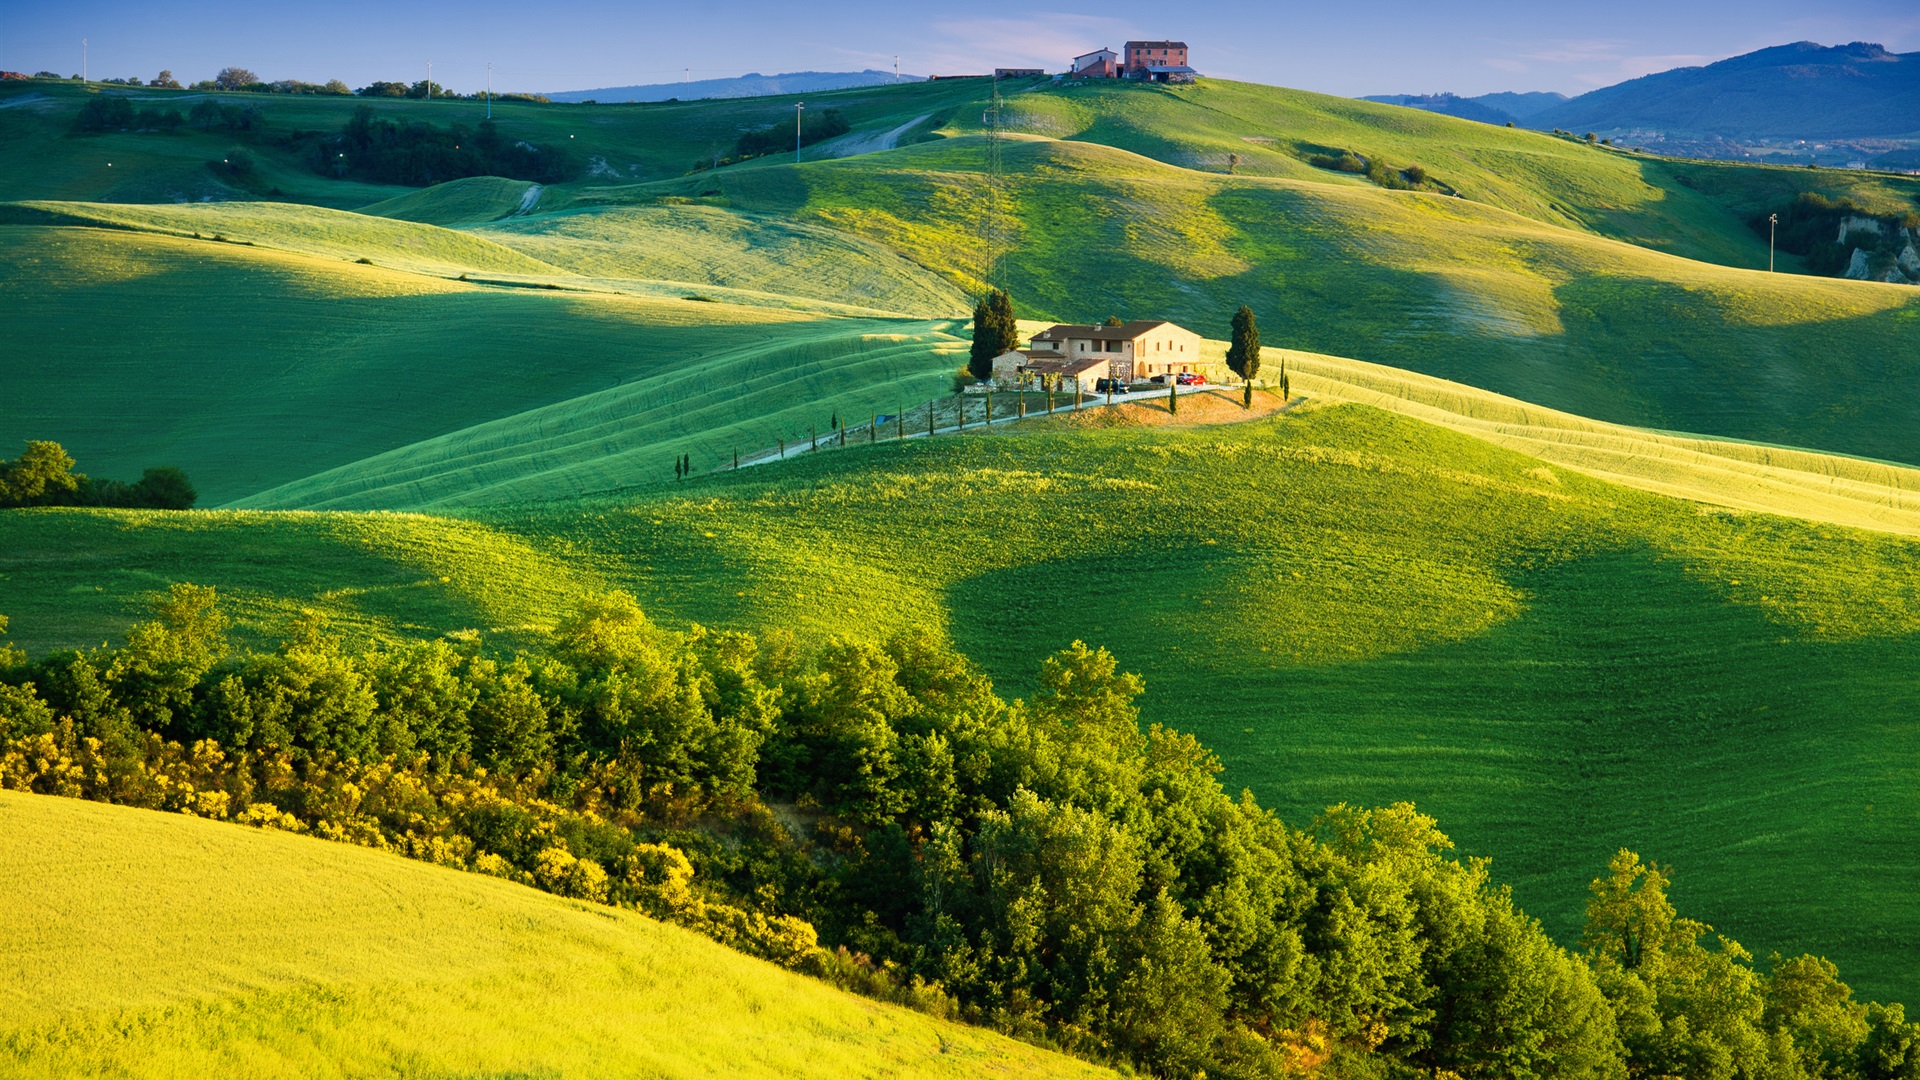 意大利 綠色的田野 美麗的風景電腦桌布 19x1080 桌布下載 Hk Hdwall365 Com